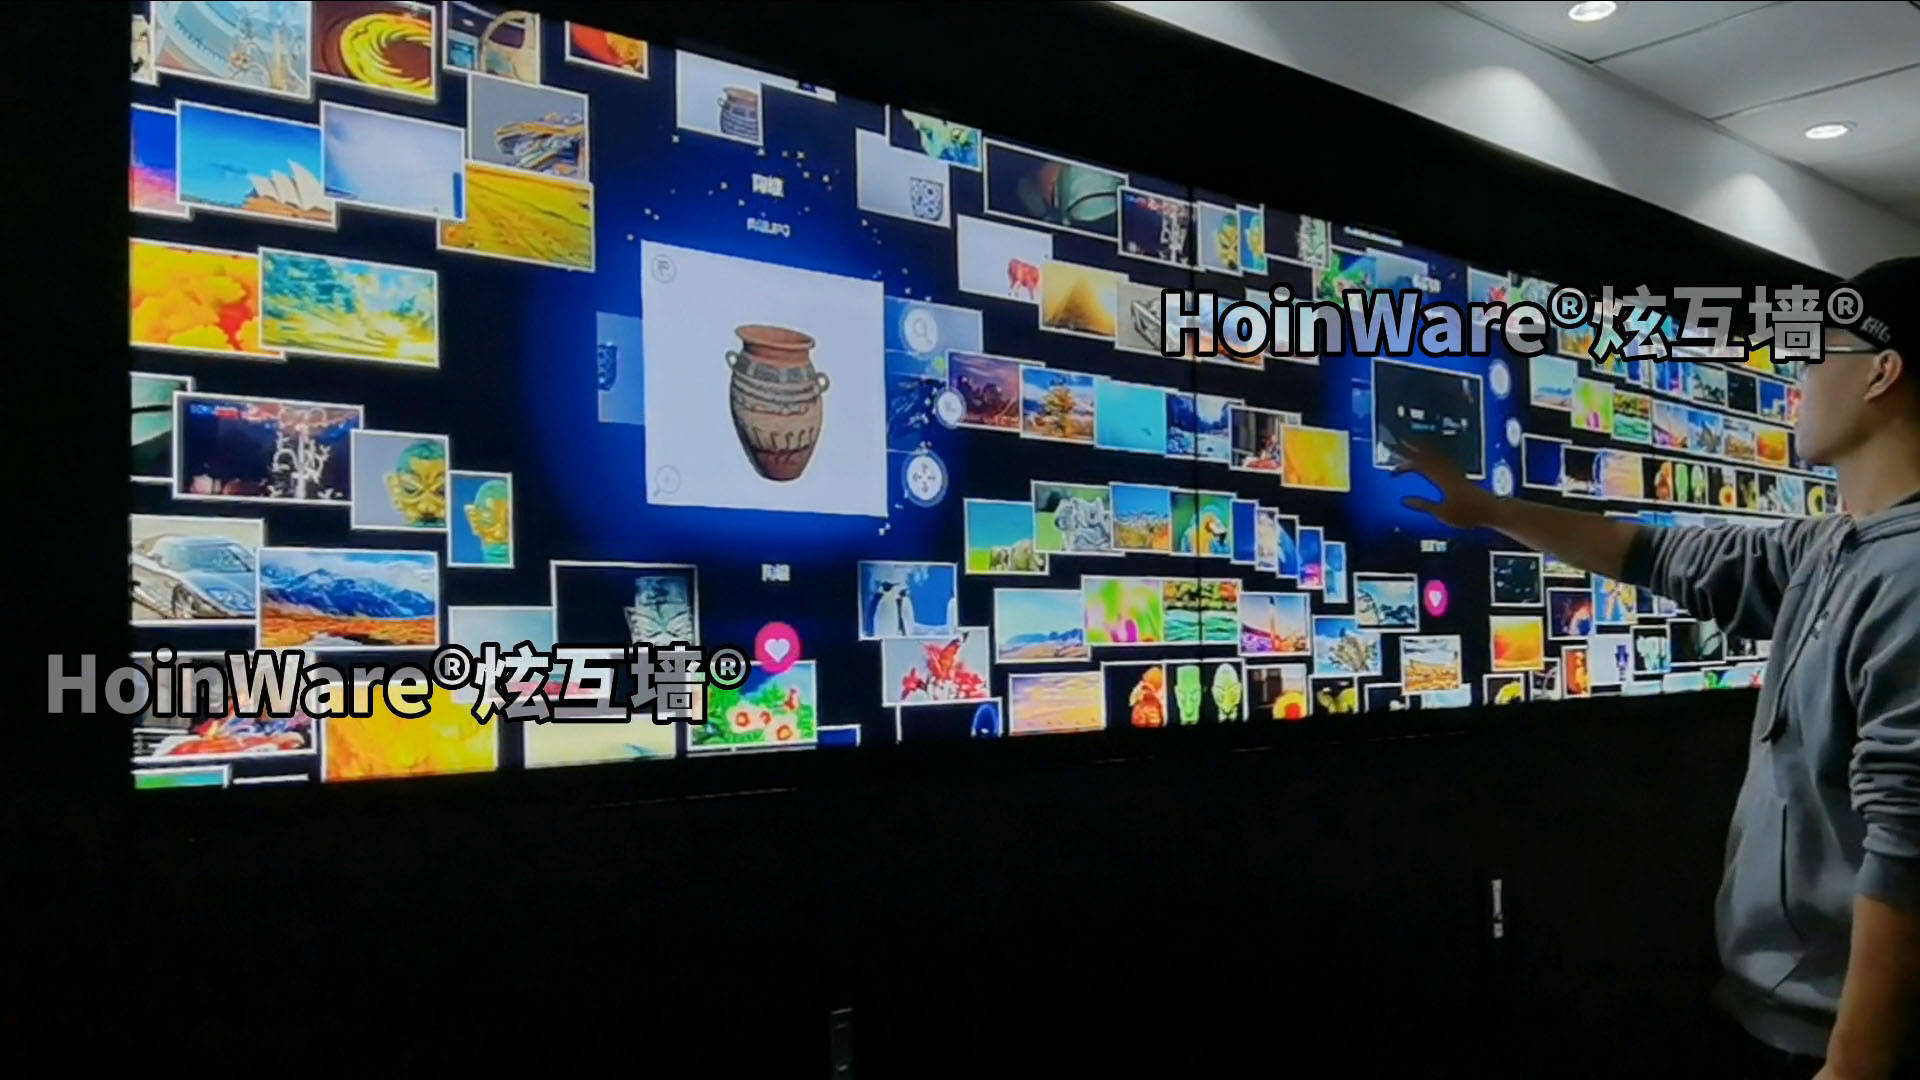 华为手机窗口缩放动画
:HoinWare炫互墙-多媒体展厅的动态流水互动图片墙软件、照片互动LED触控墙软件